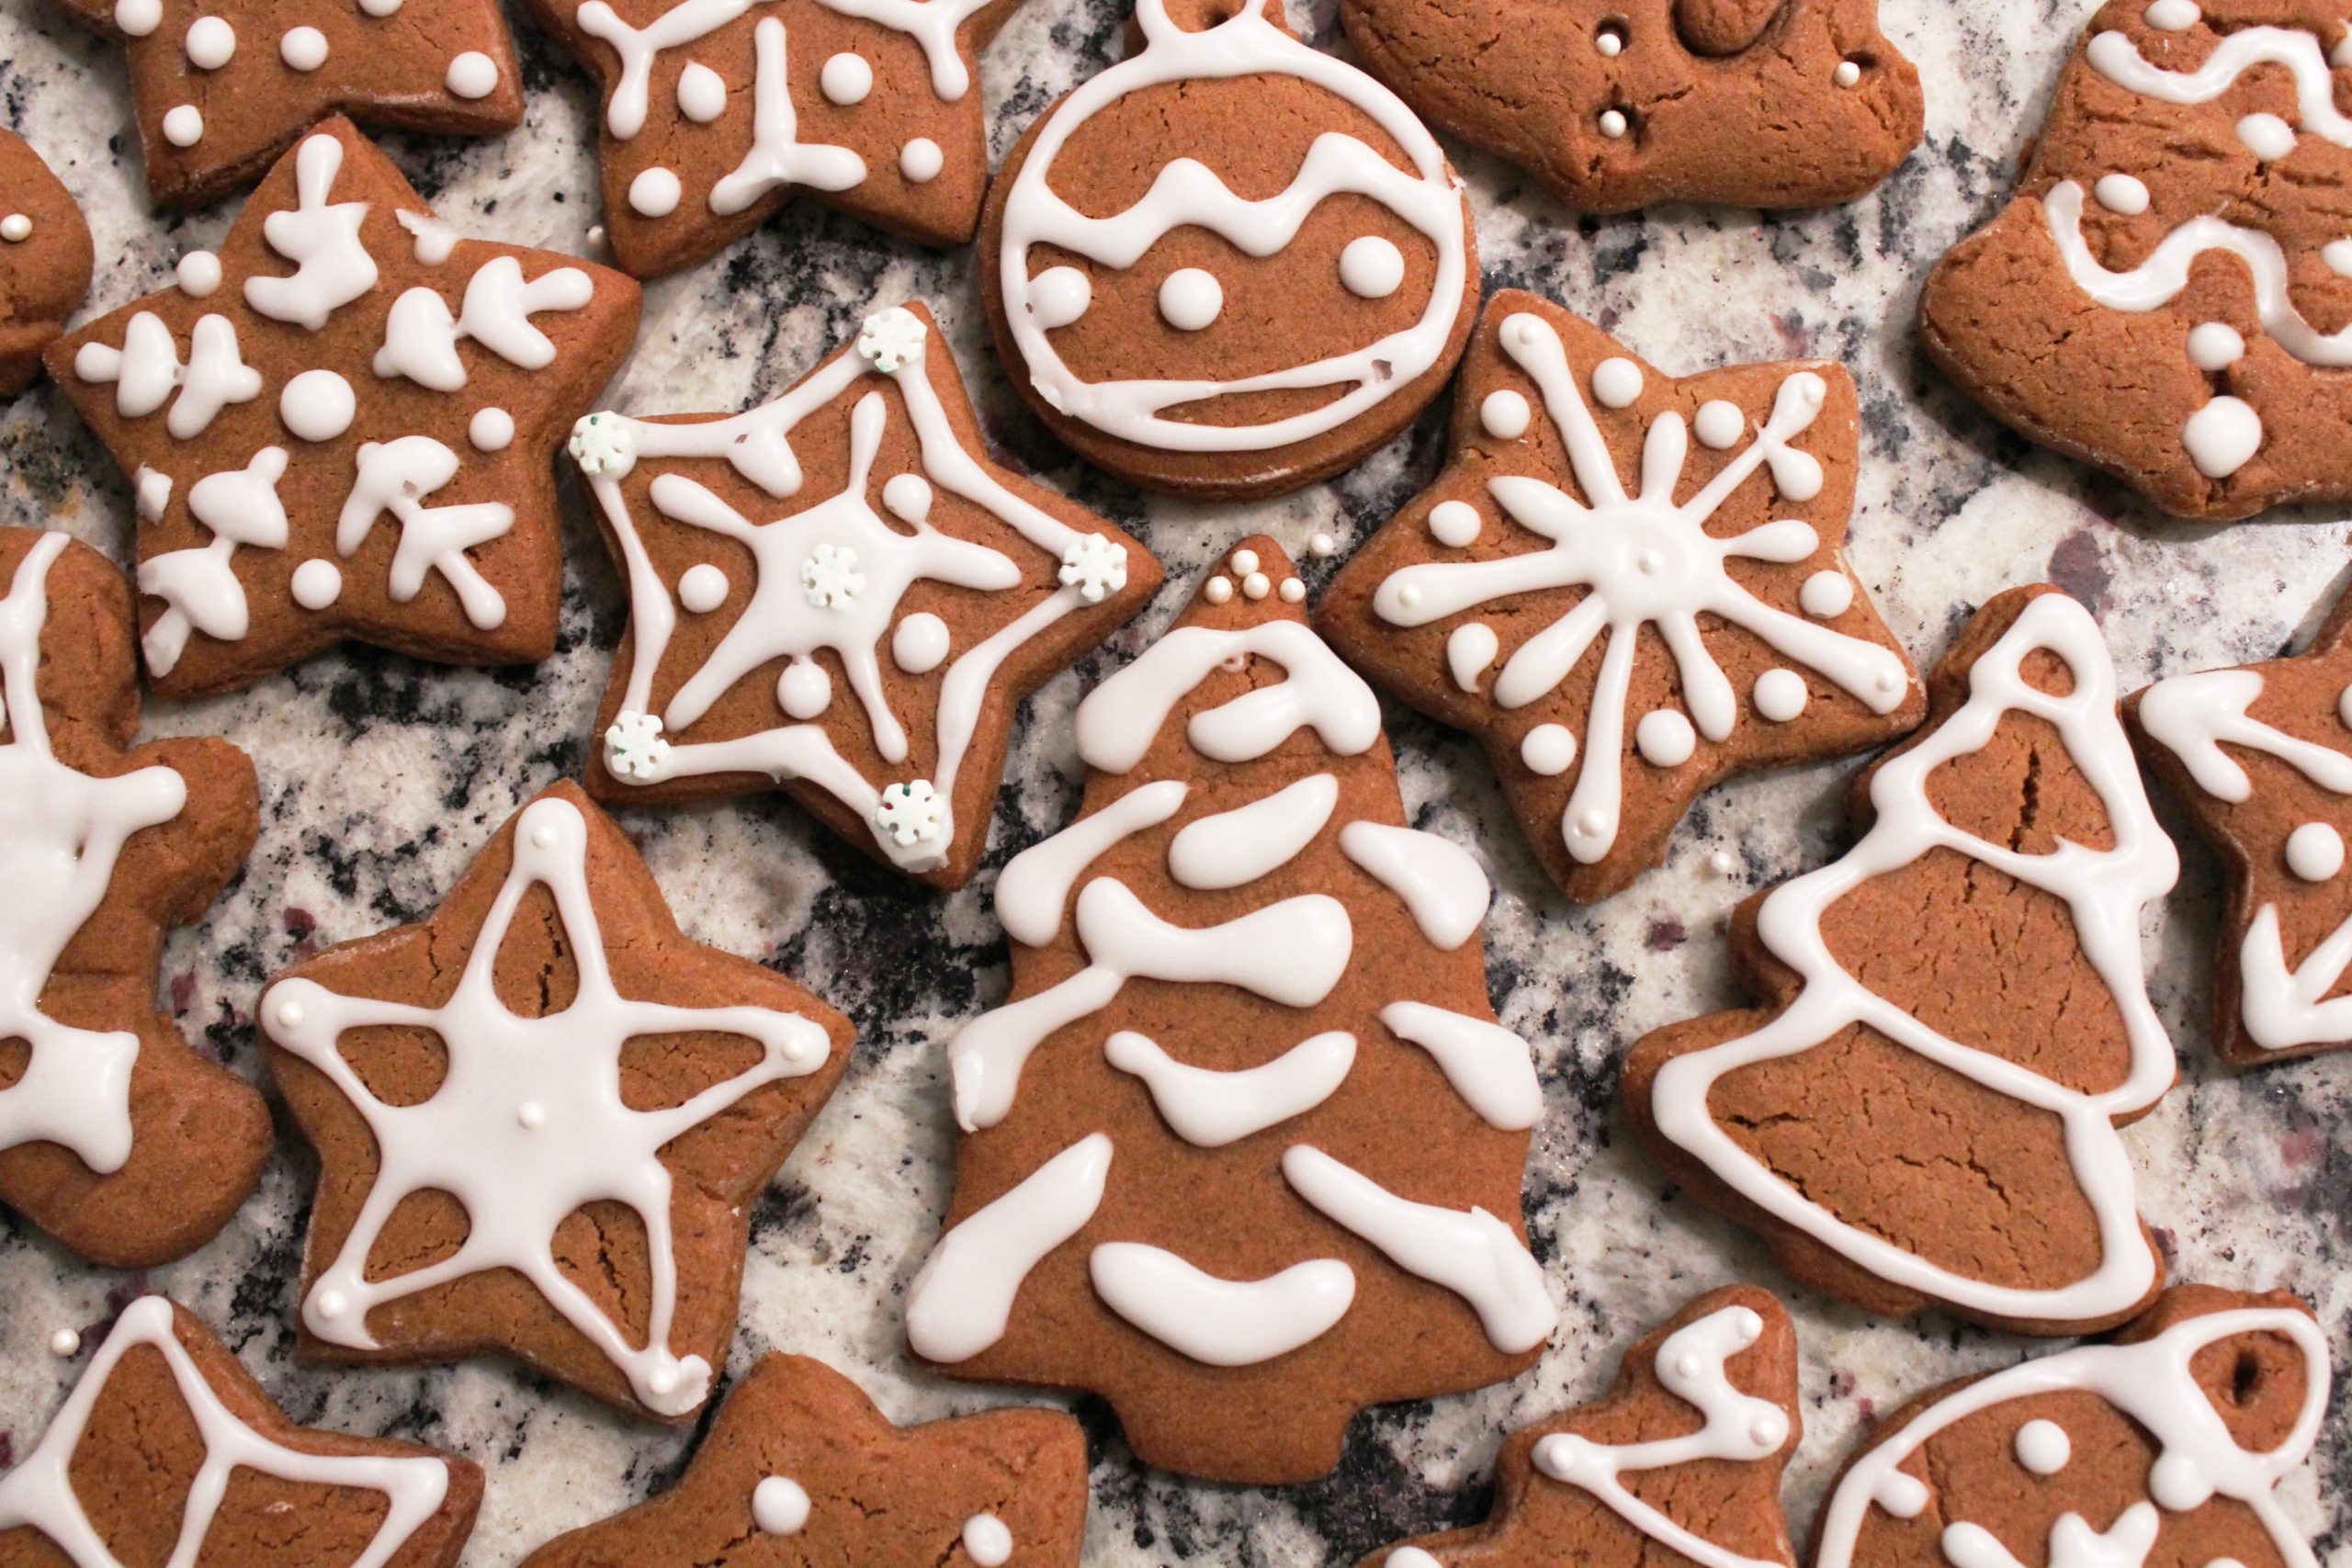 Χριστουγεννιάτικα μπισκοτα: Η κλασική συνταγή 200 ετών για νόστιμα χριστουγεννιάτικα μπισκότα